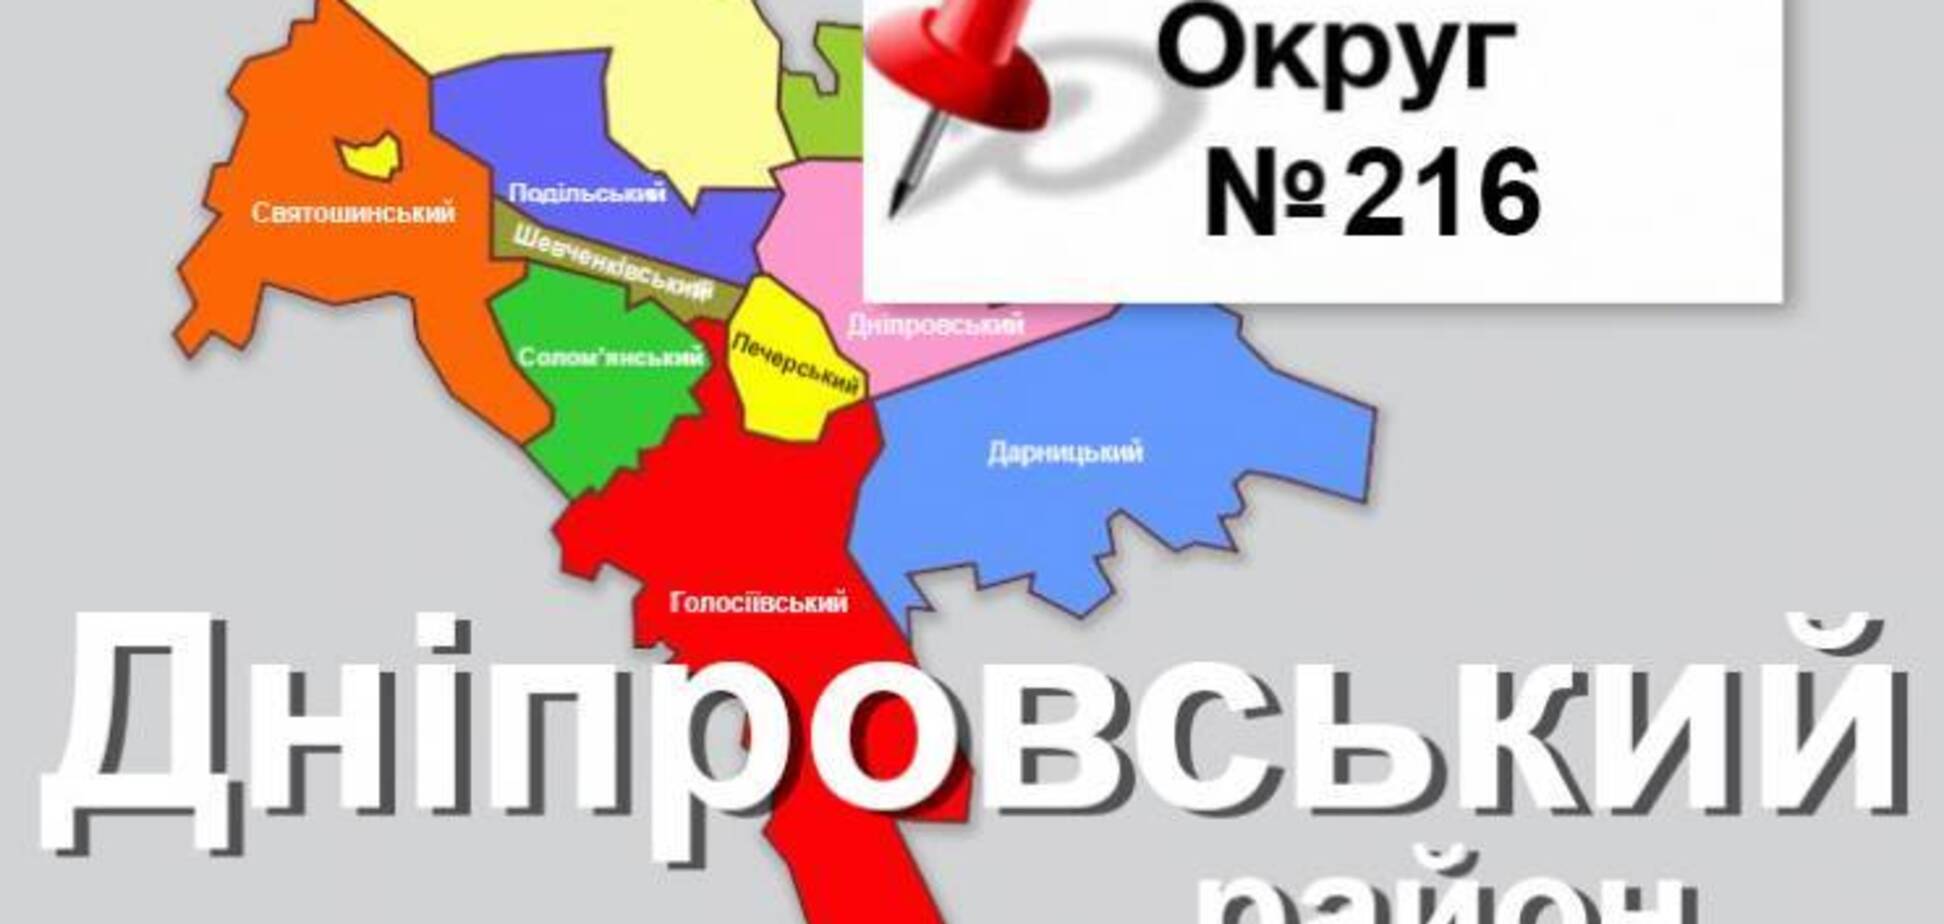 Політолог: суспільство має бити на сполох щодо ситуації на 216-му виборчому окрузі в Києві